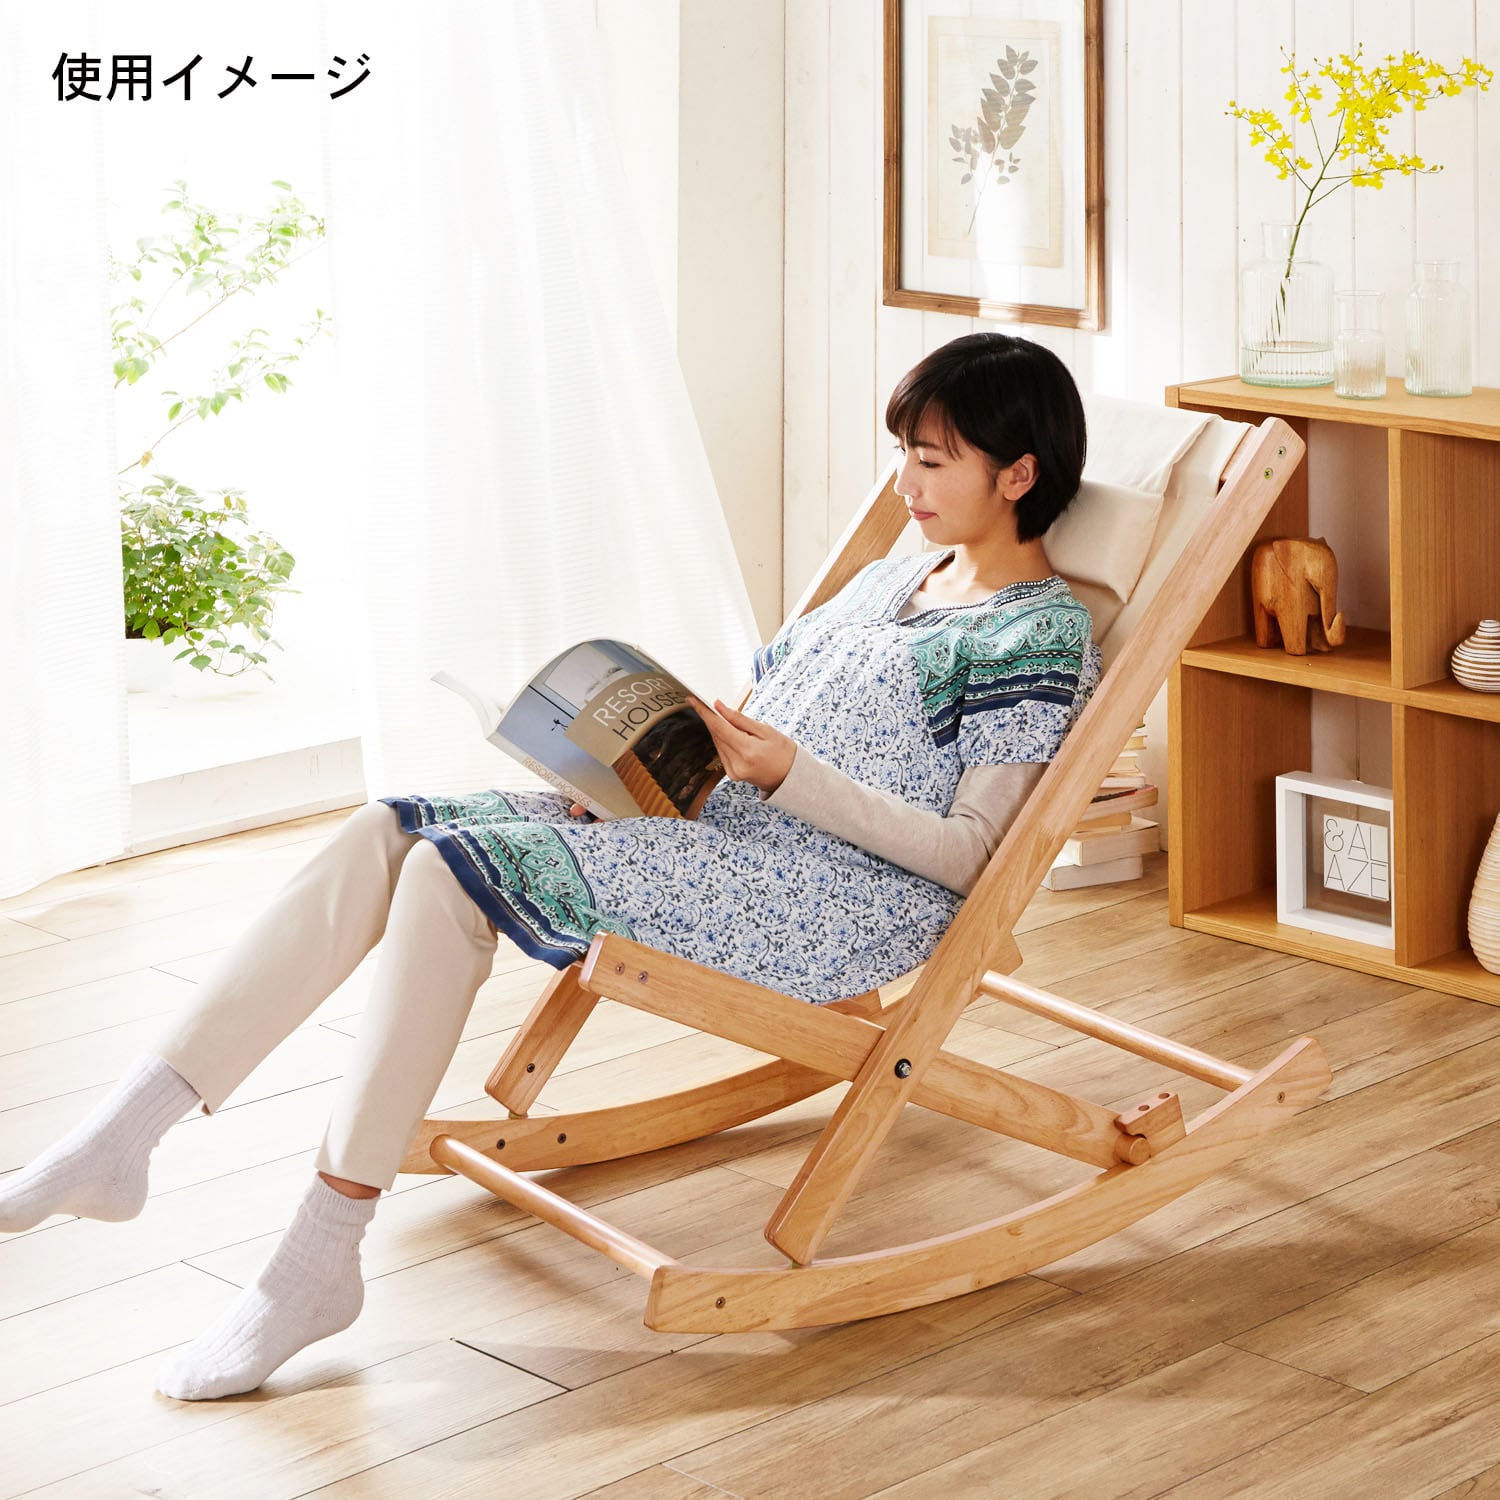 16500円売店 オンライン 激安 通販 桐ロッキングチェア 椅子/チェア